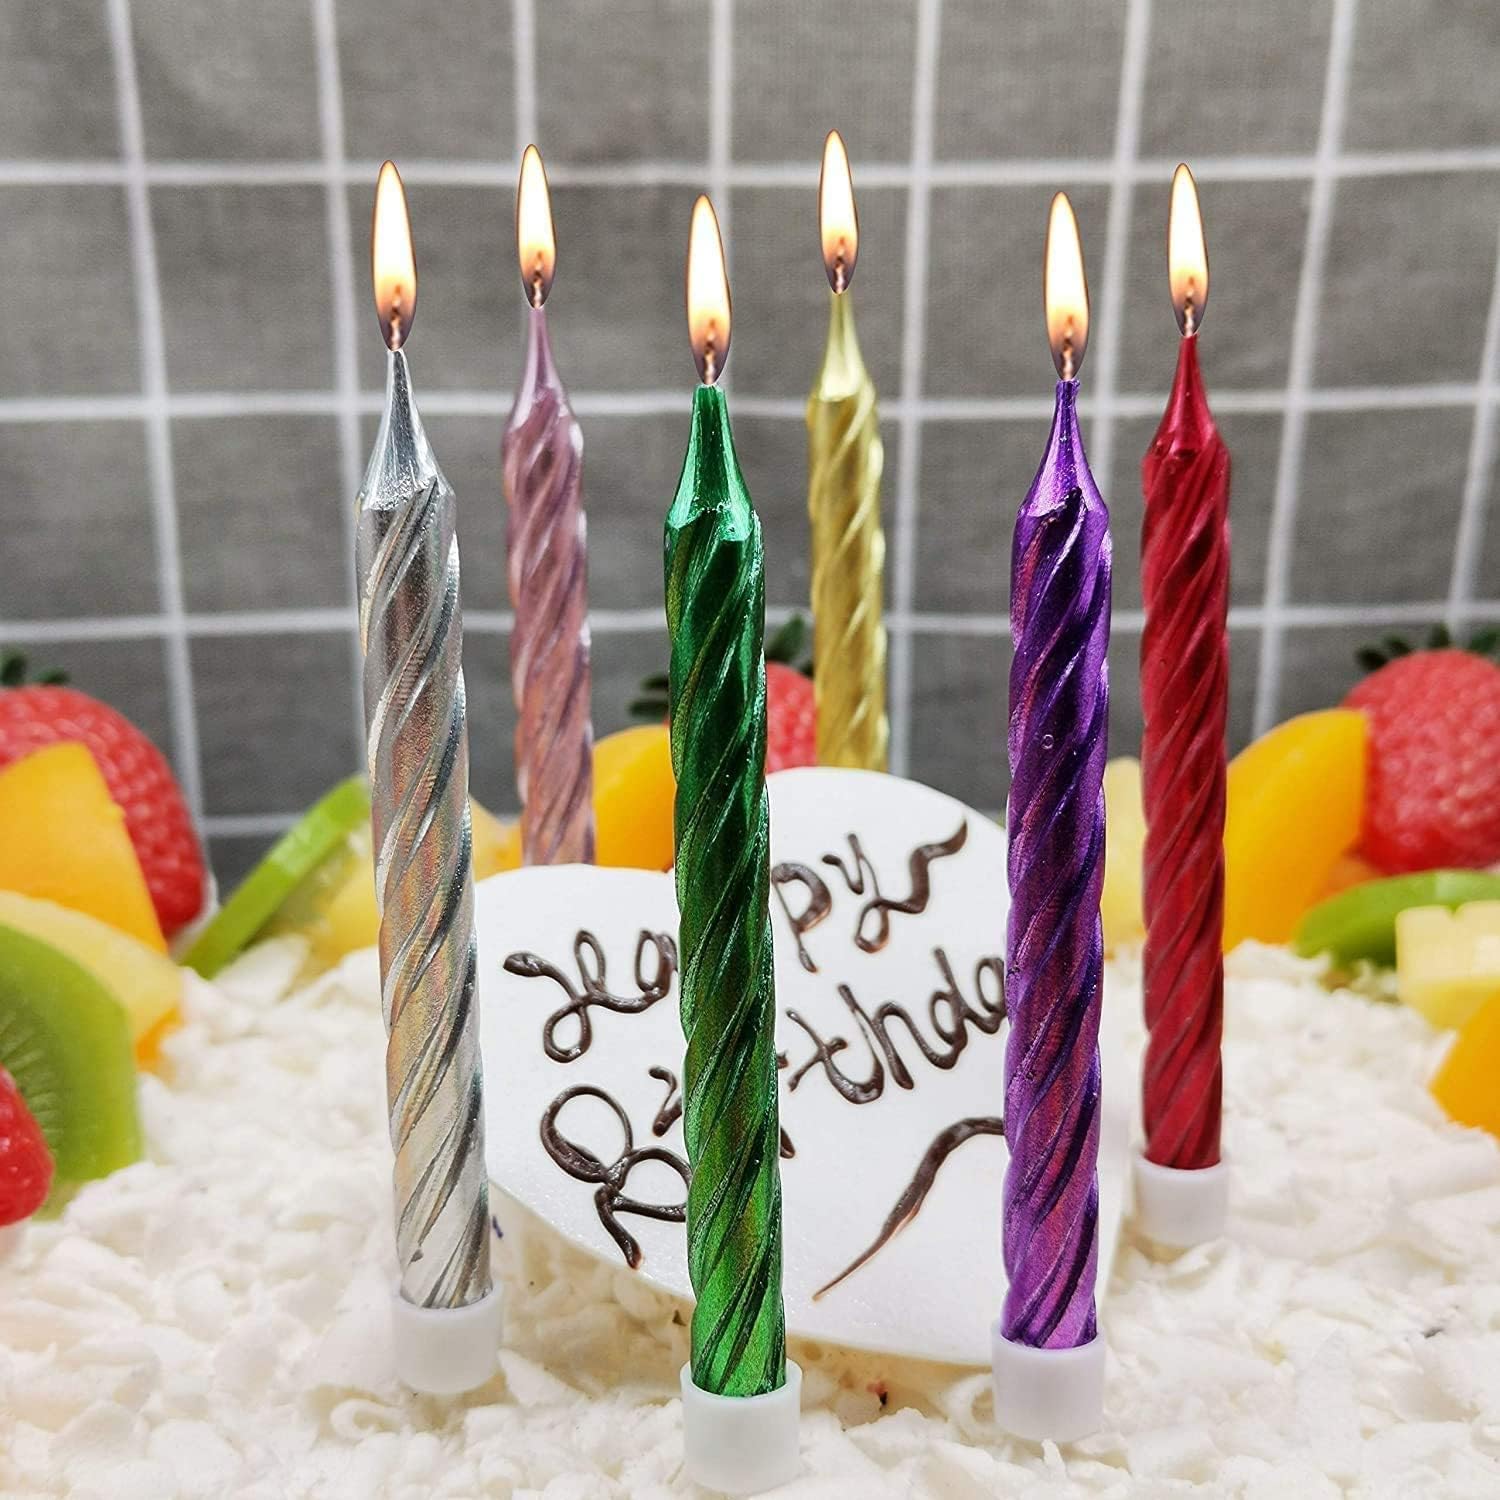 Metallic Spiral Cake Candles